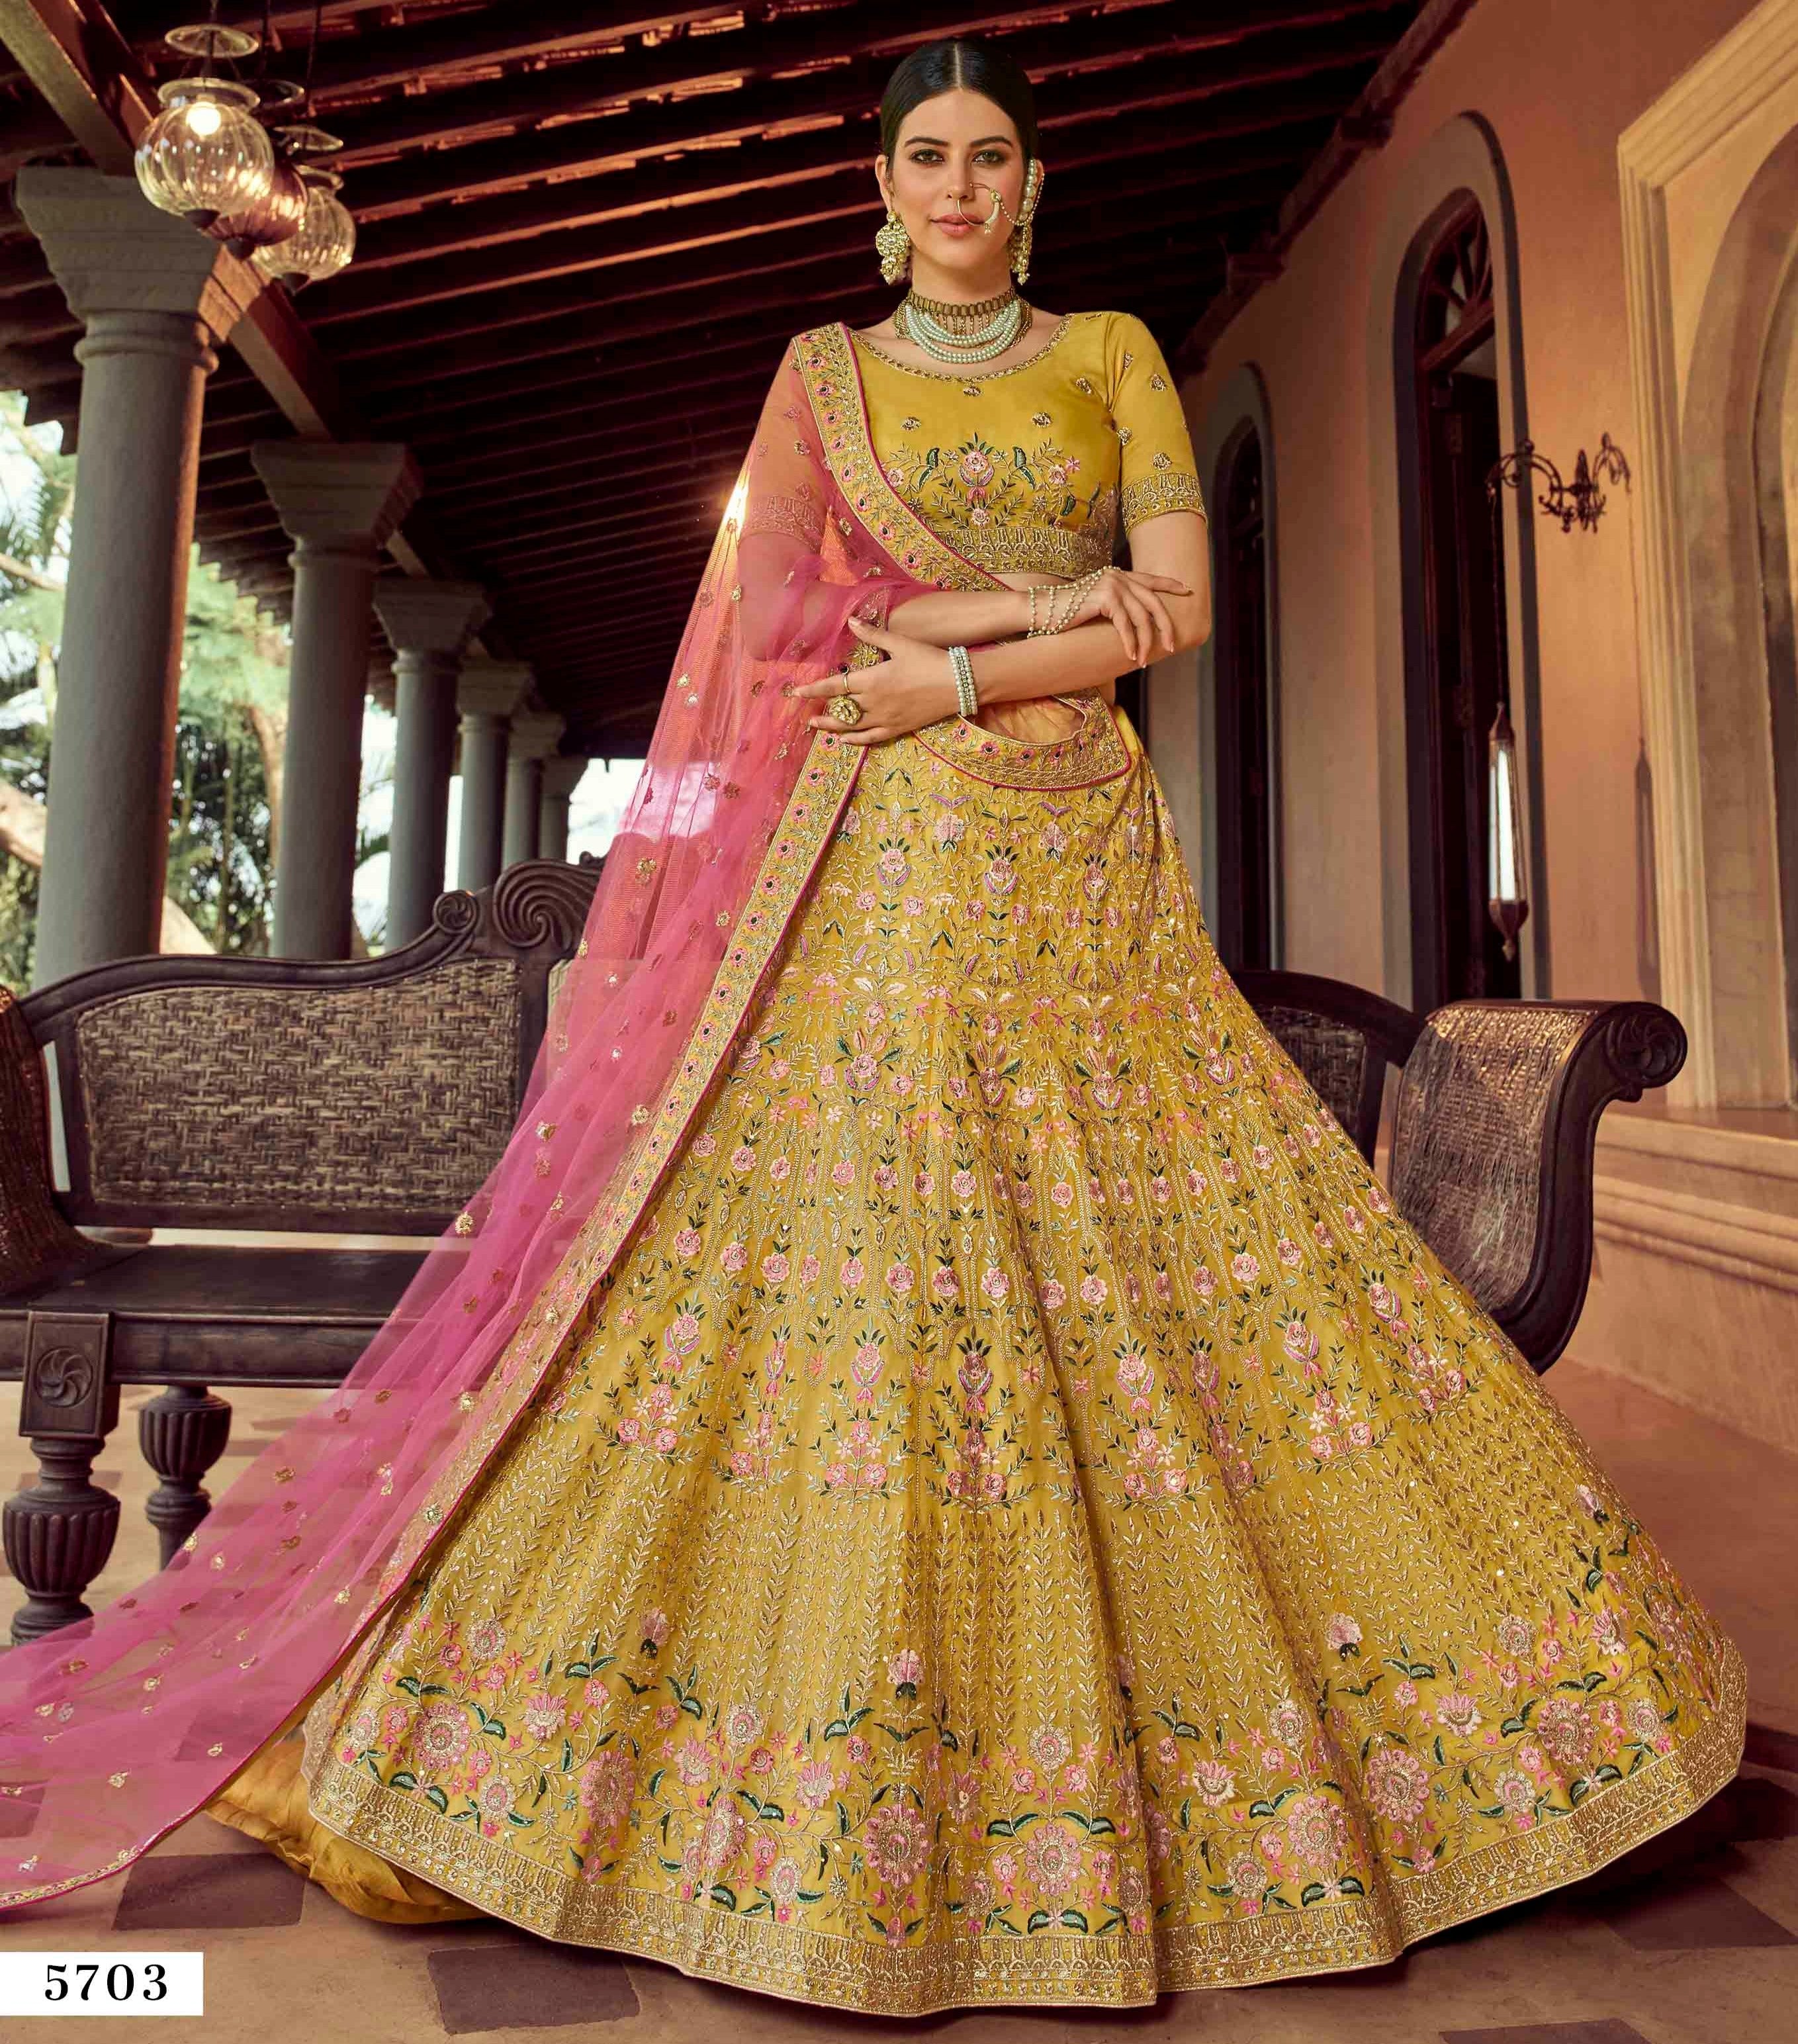 Purple Lacha Suit Lengha Choli Lehenga Long Top Lehanga Indian Sari Saree  Dress | eBay